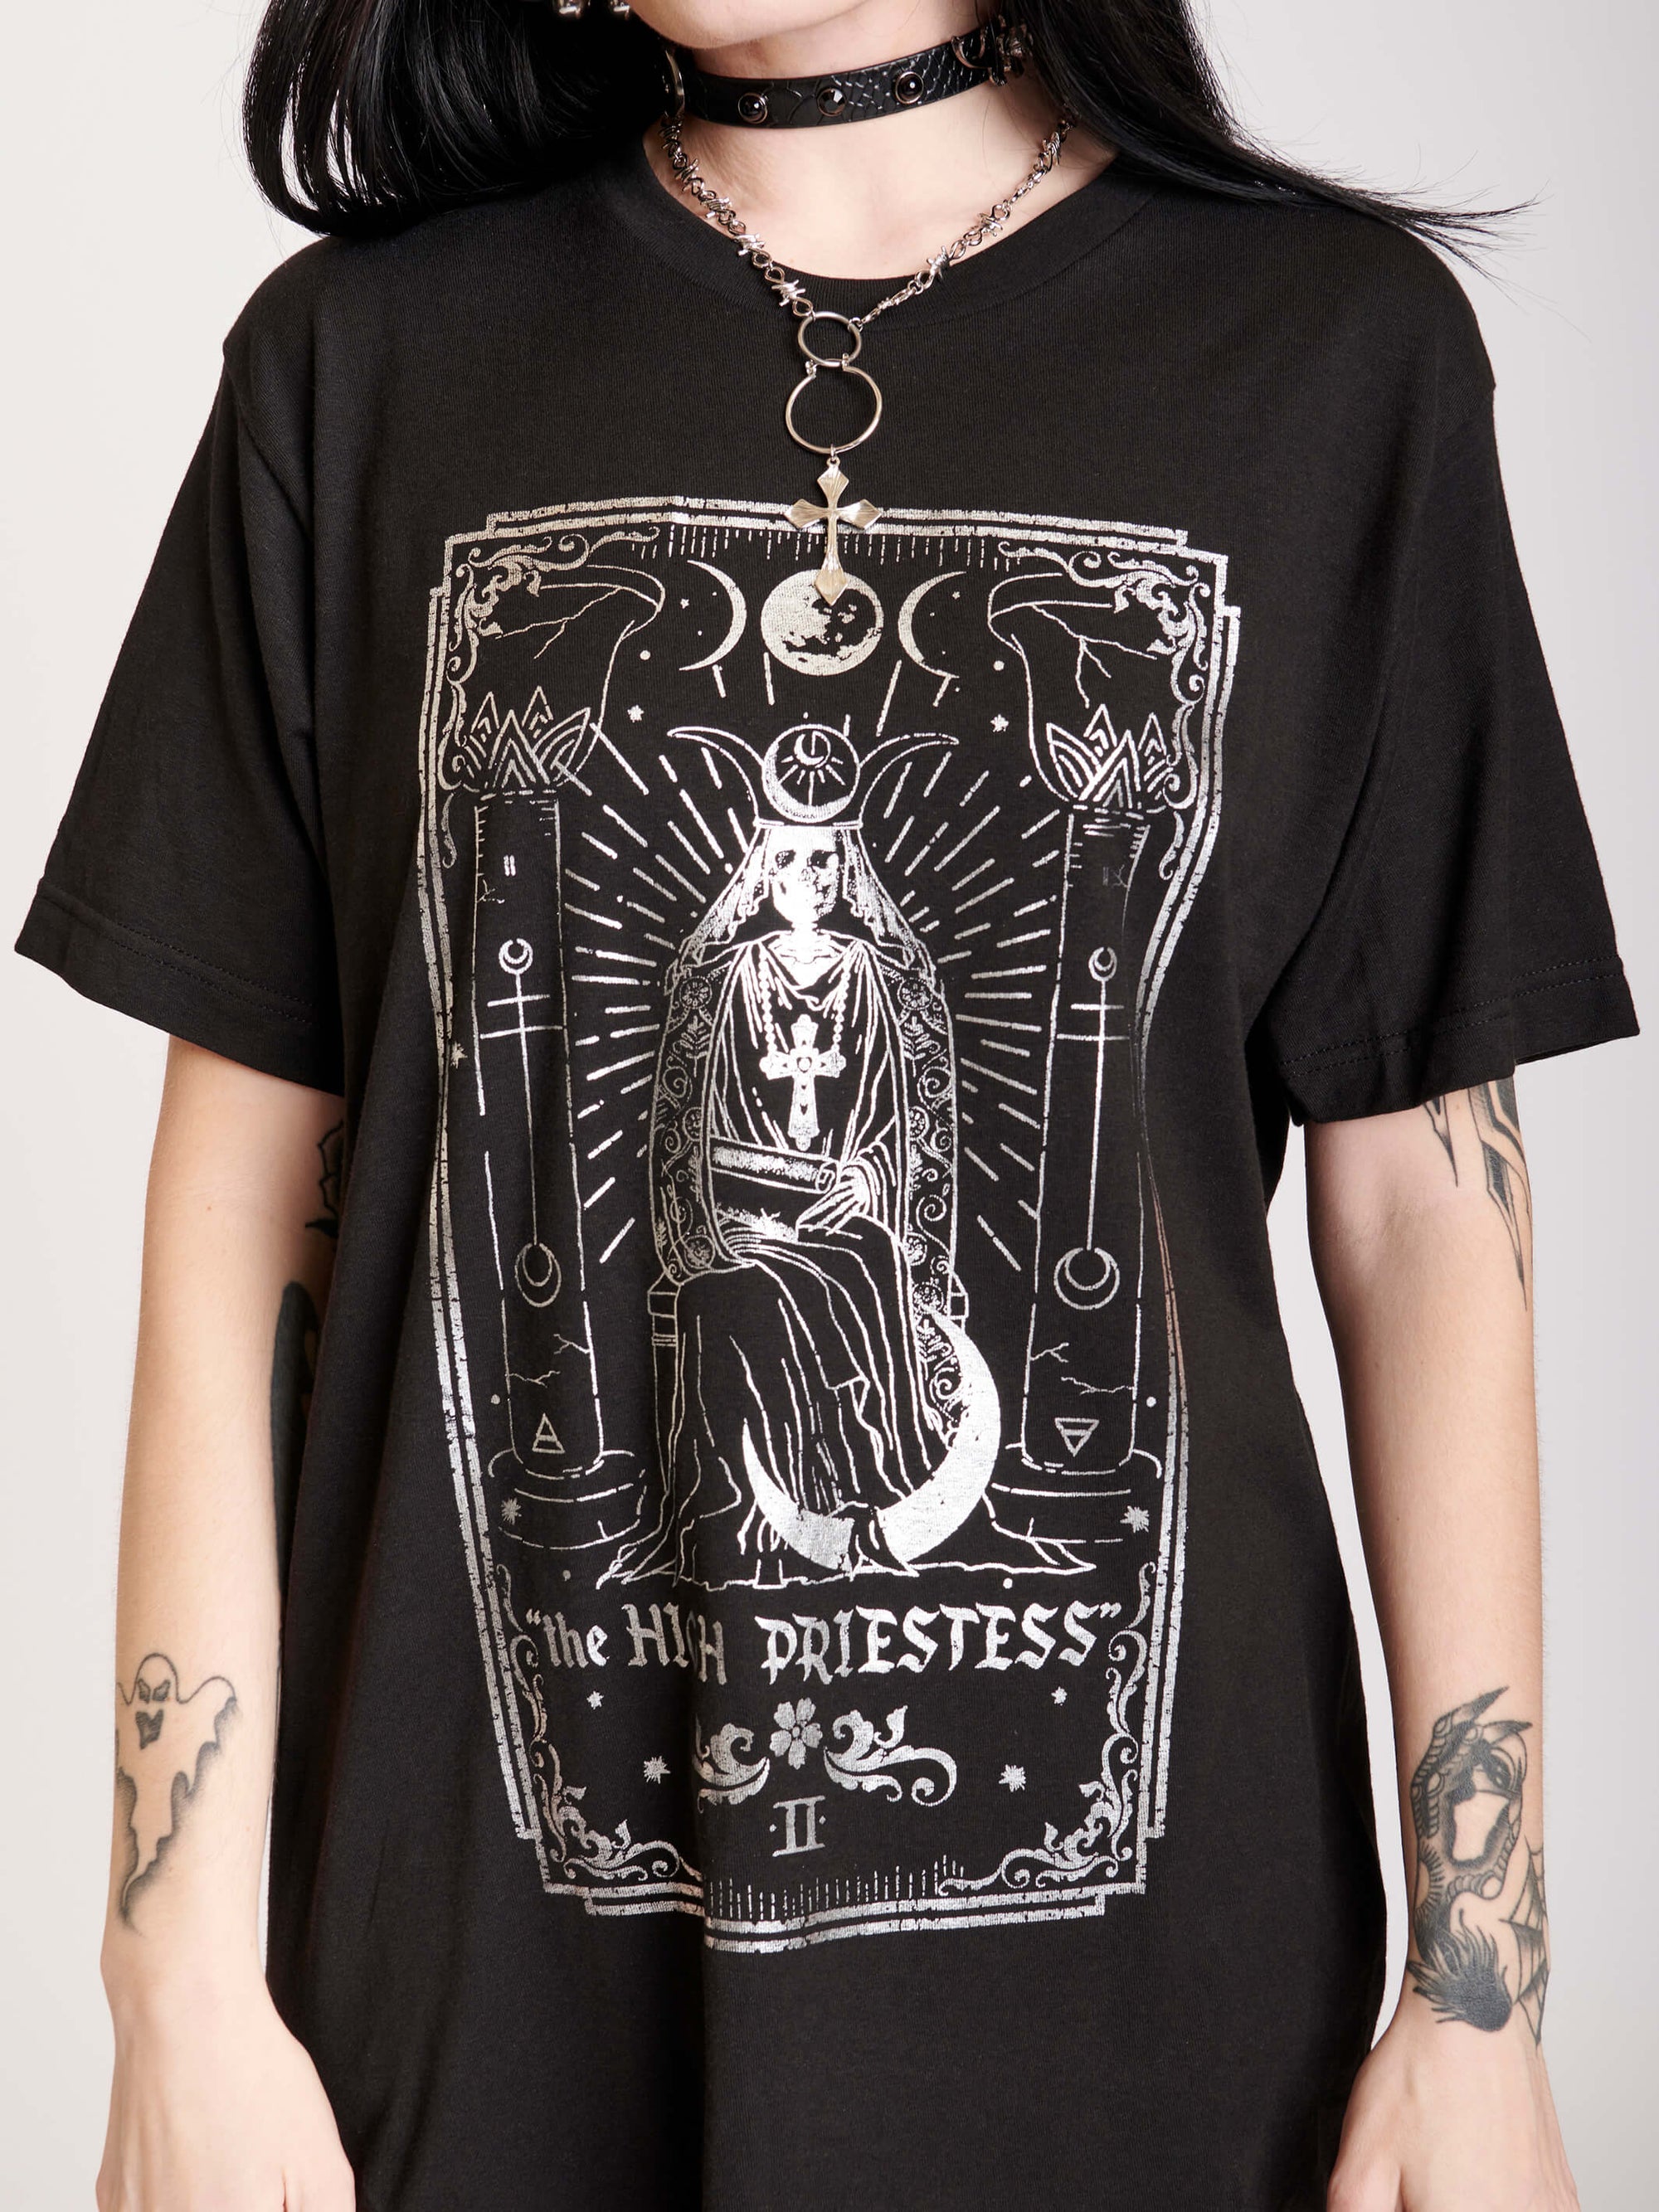 Black t-shirt featuring a sleek silver foil design